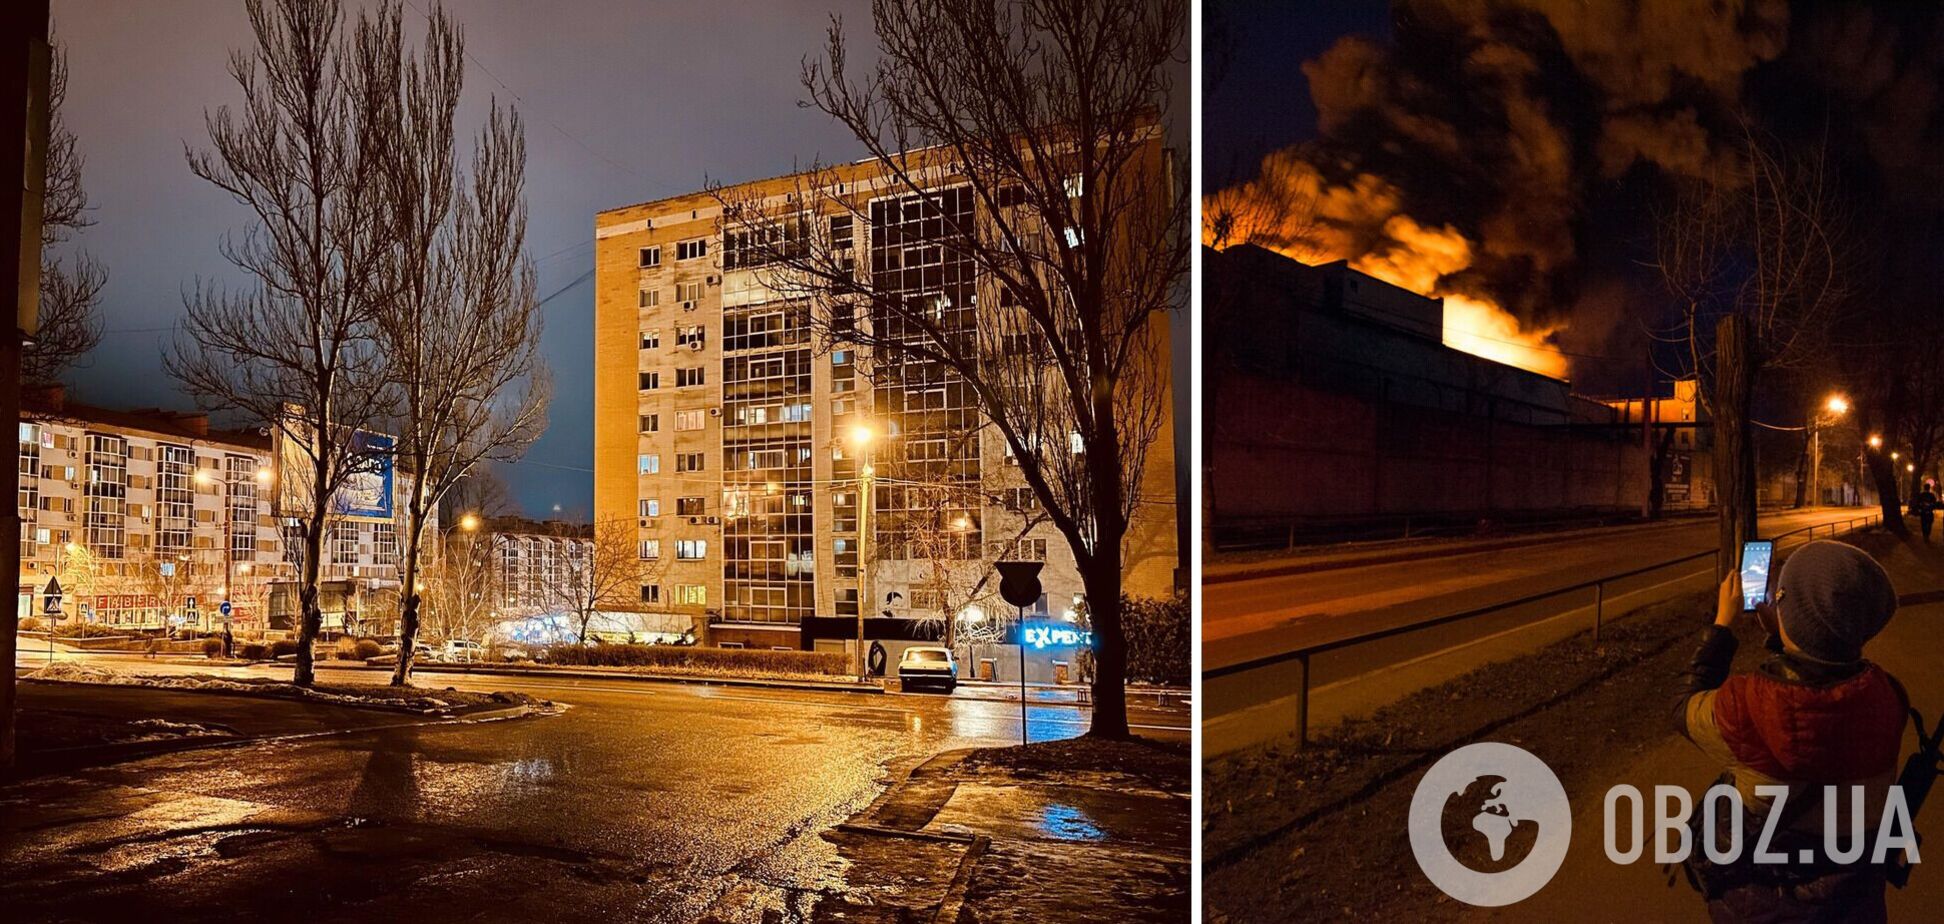 В оккупированном Донецке взрыв на электроподстанции: часть города осталась без света. Видео